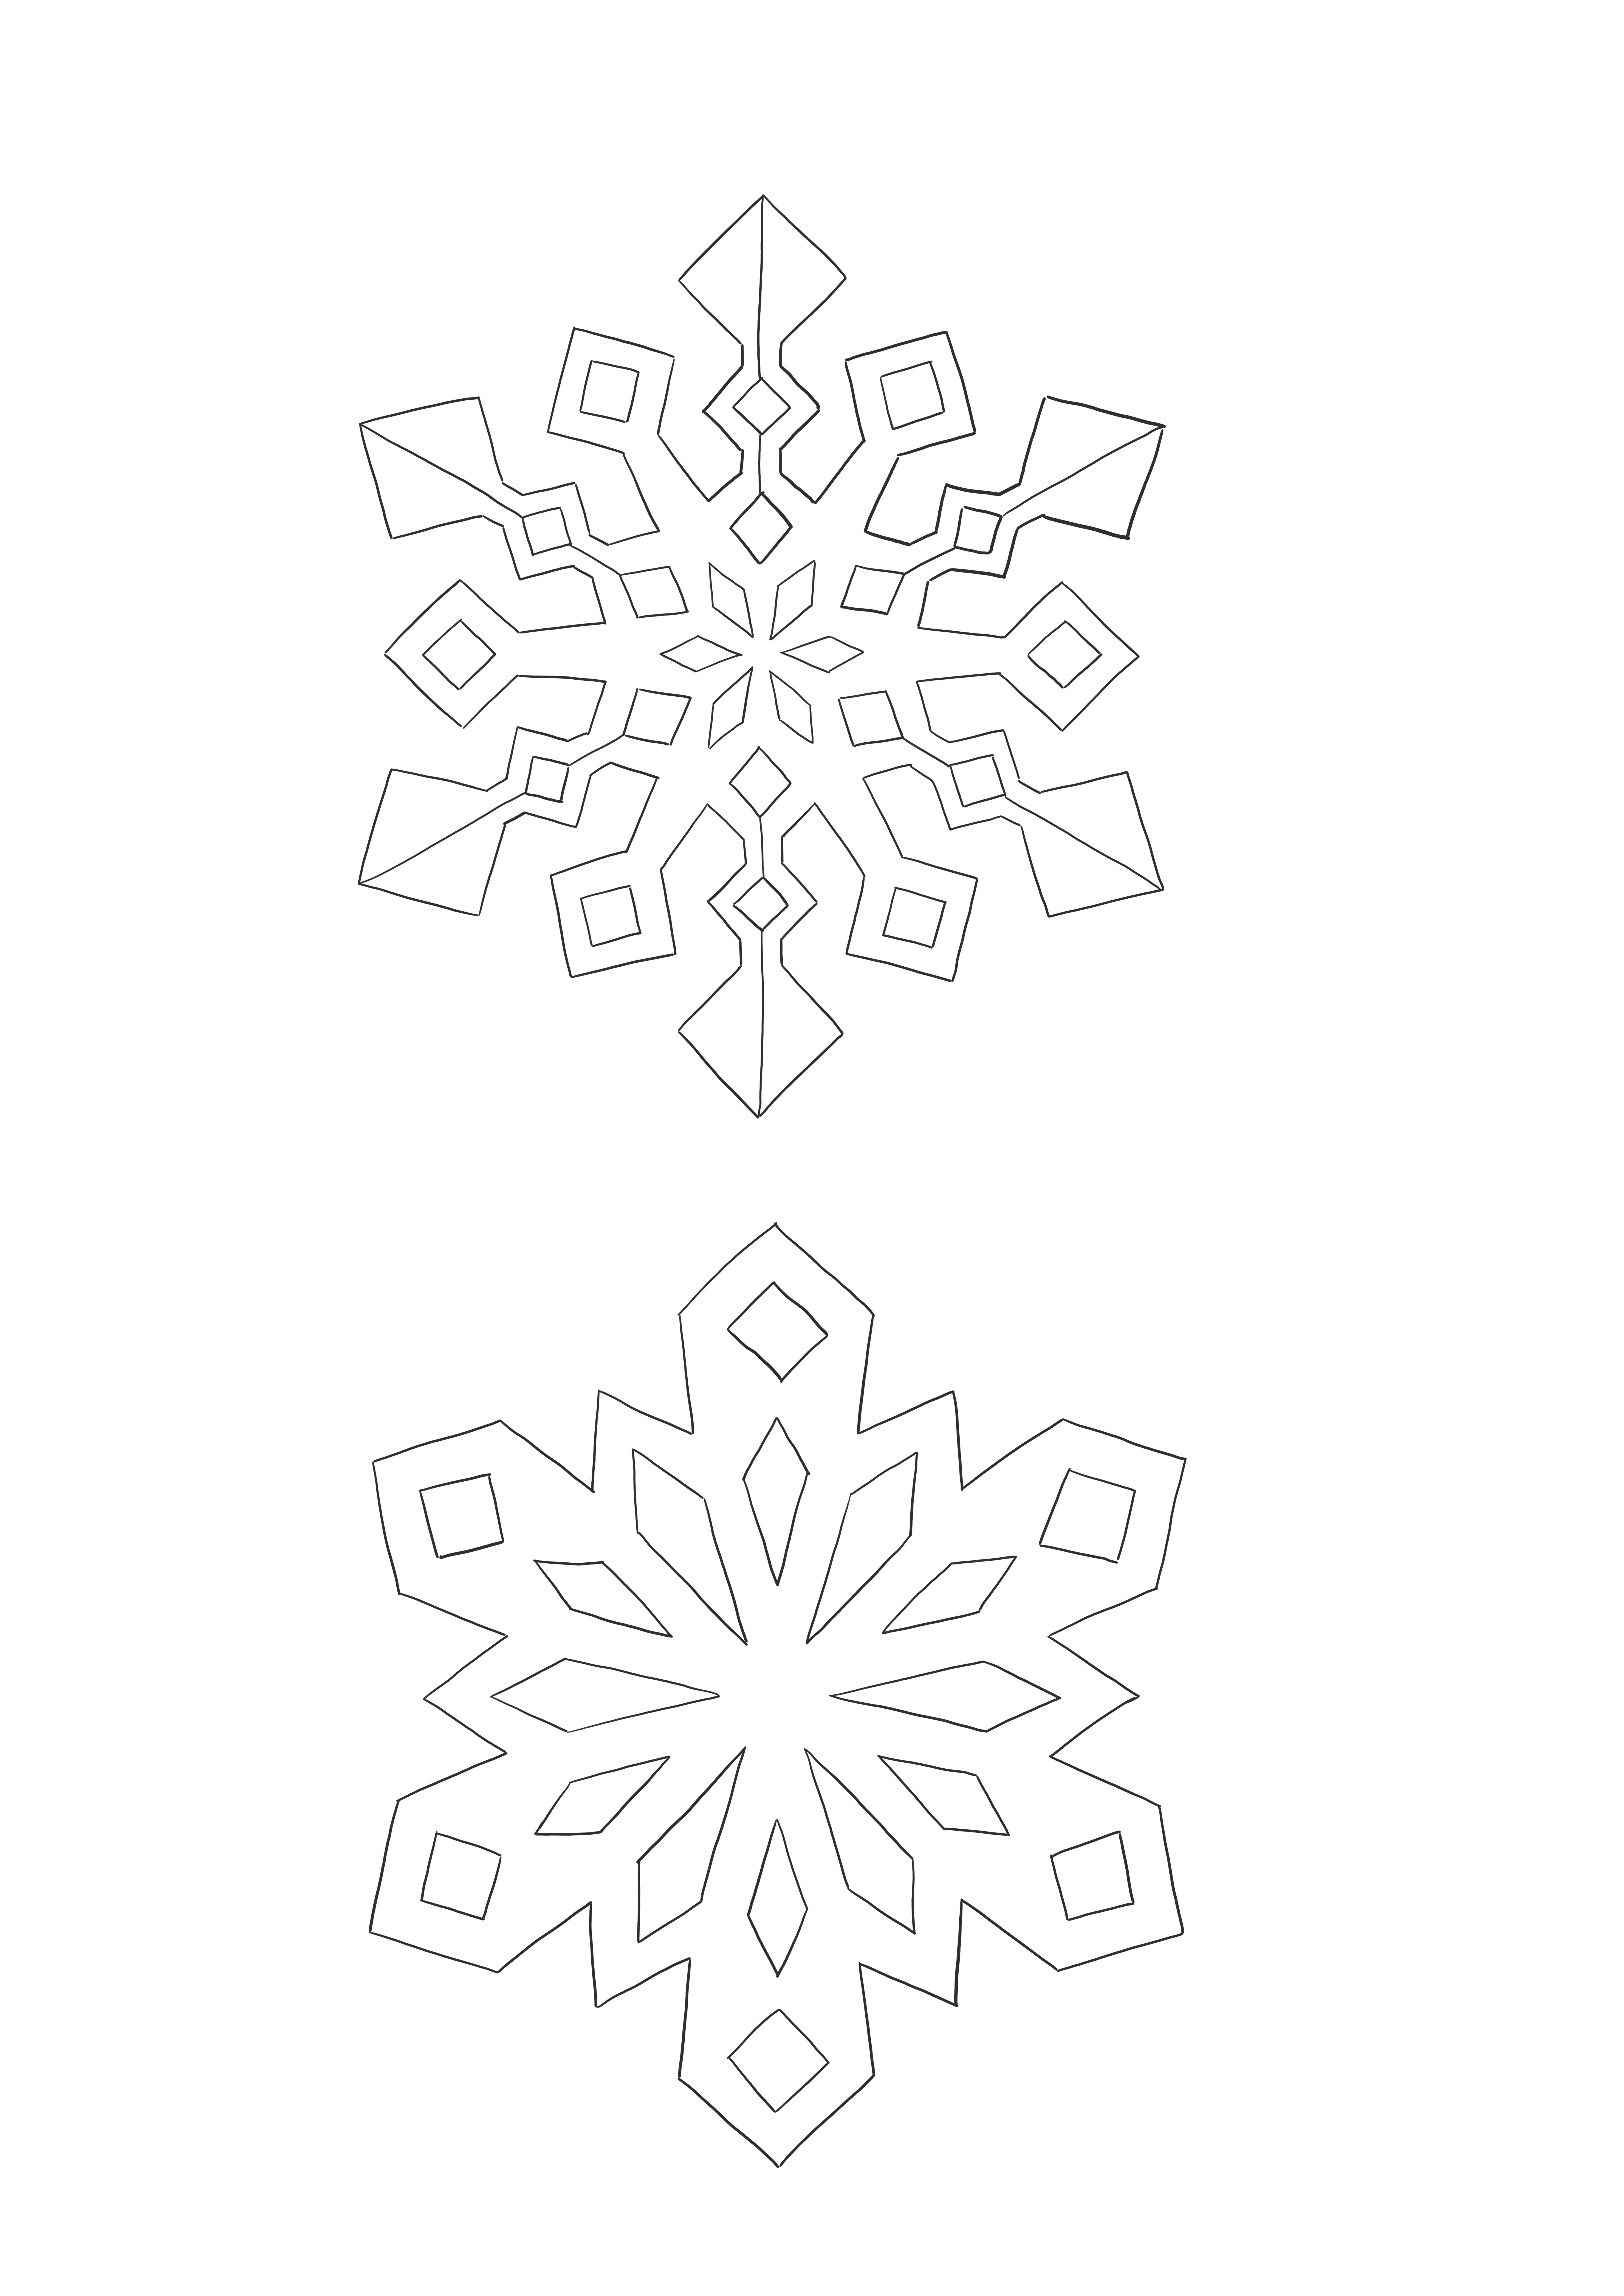 Imagen de copos de nieve fácil de colorear para niños de todas las edades